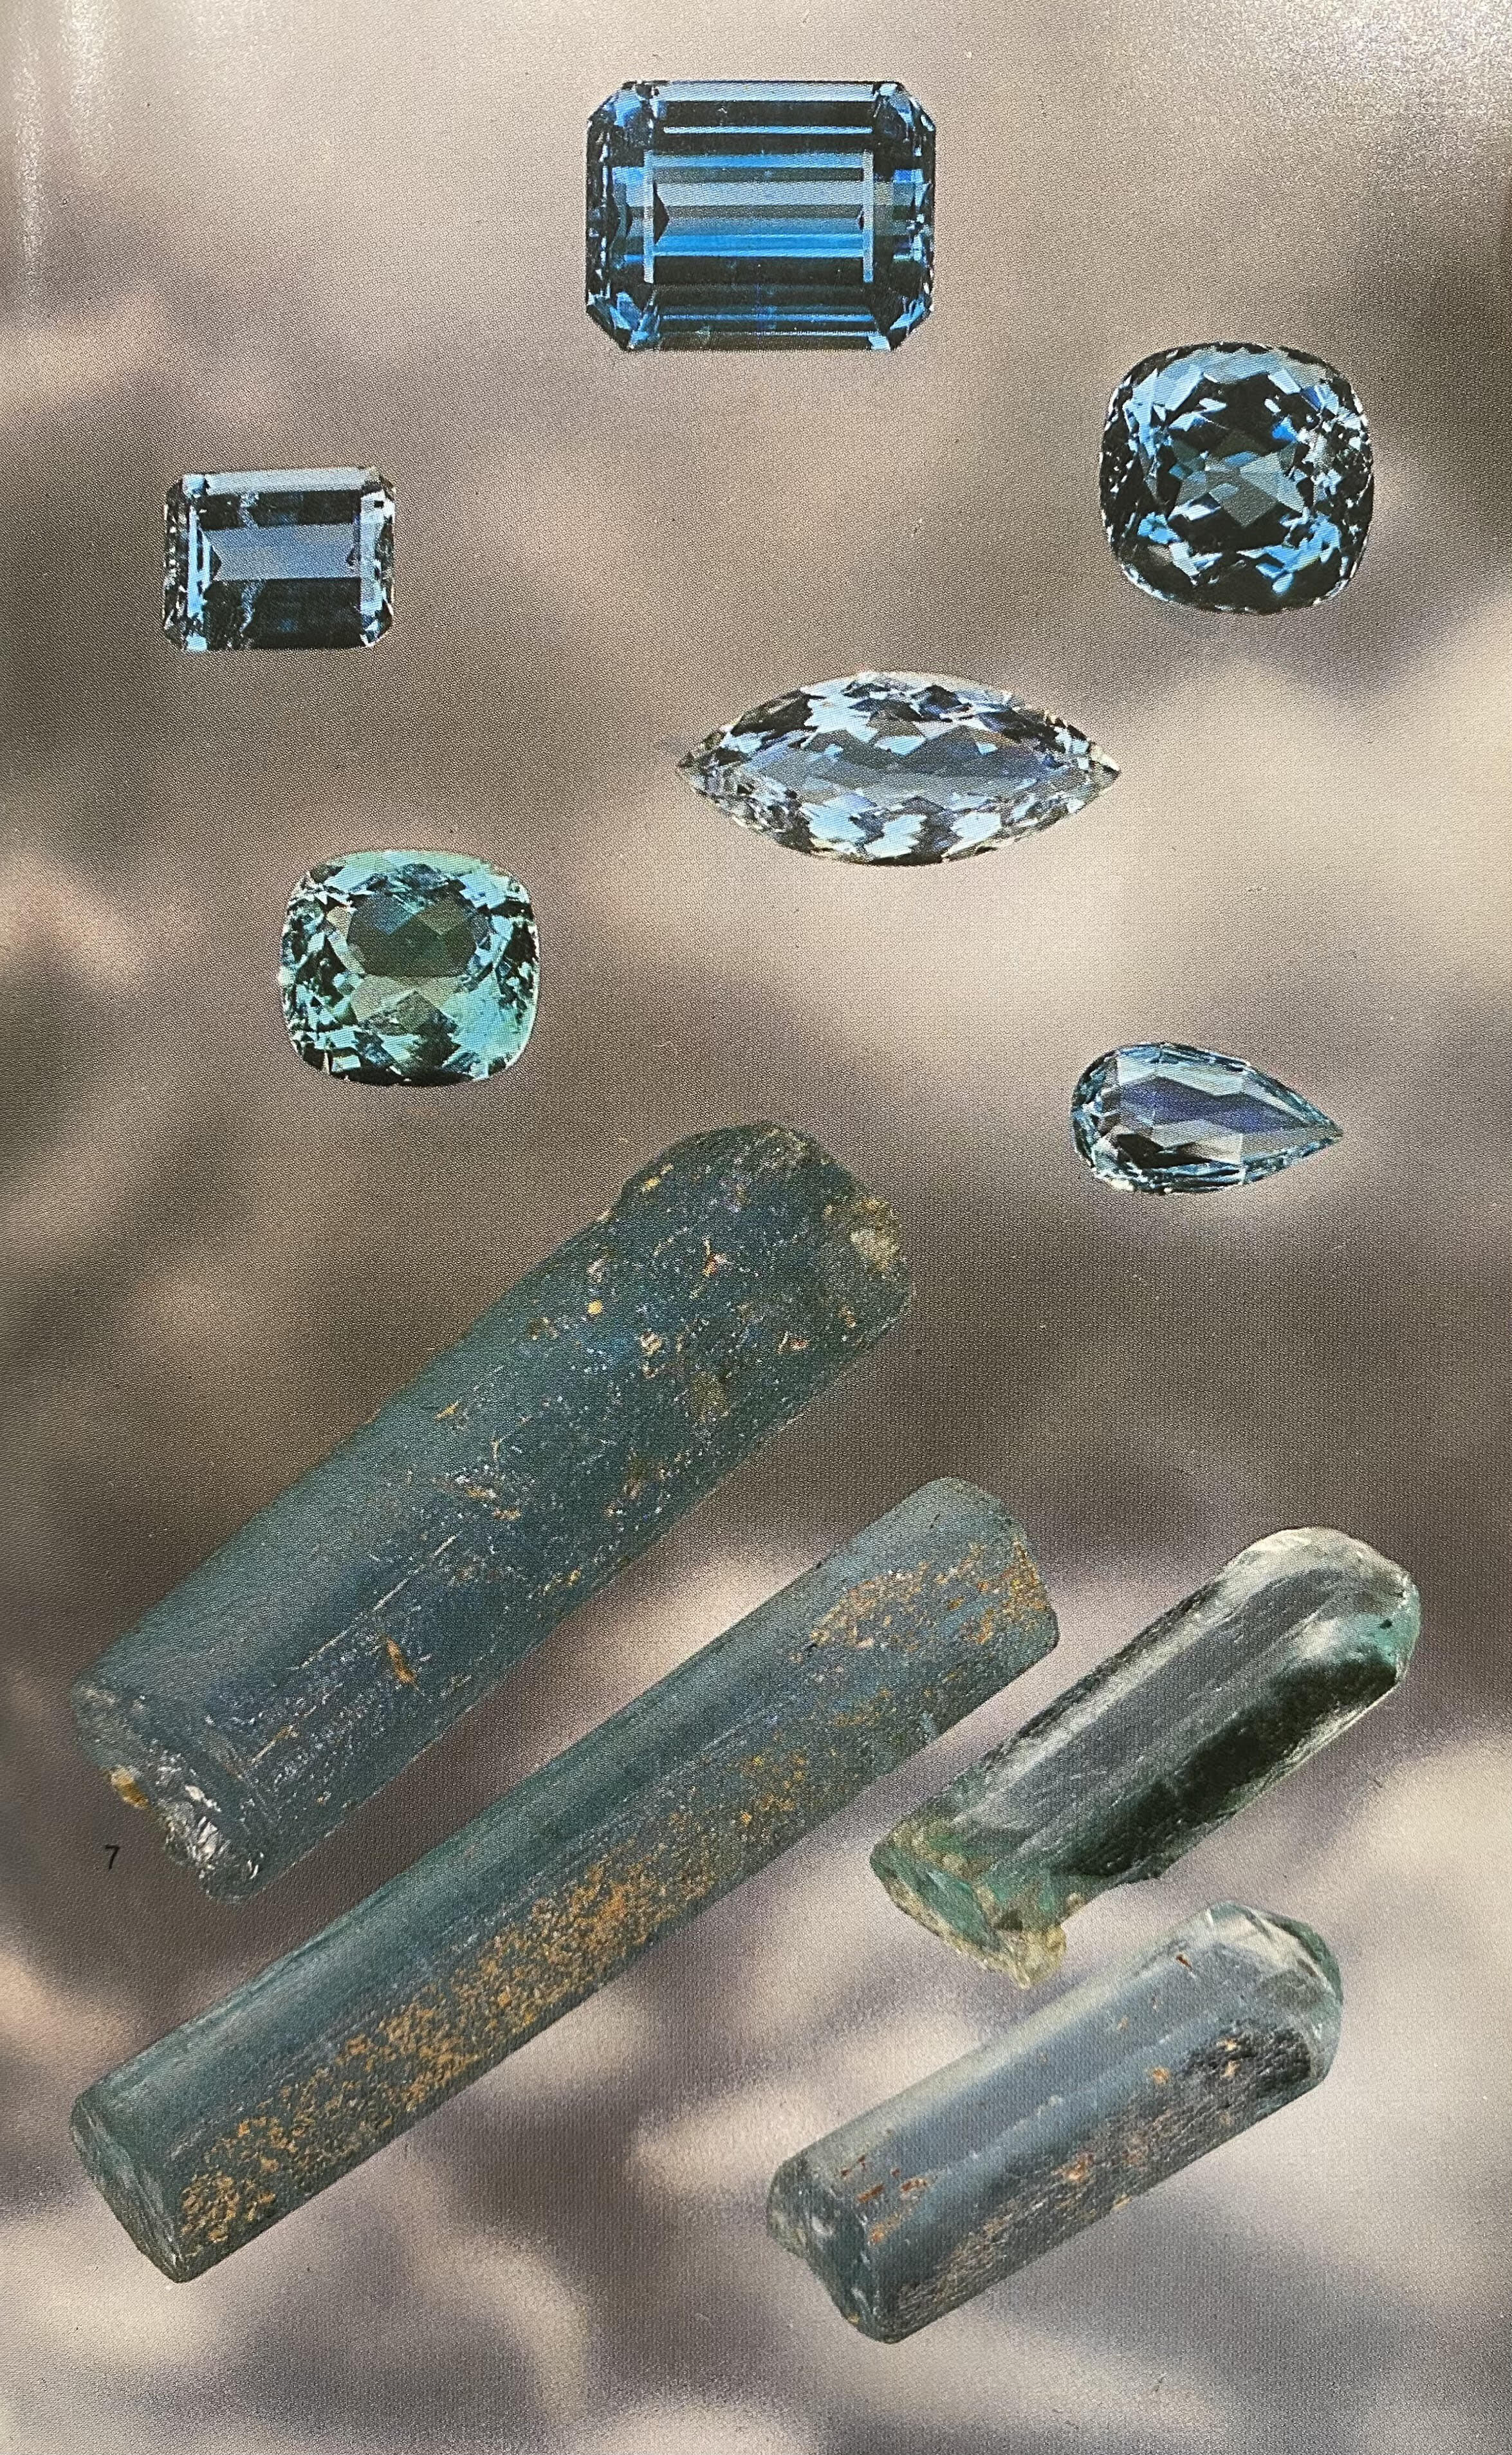 image of aquamarine cut and rough